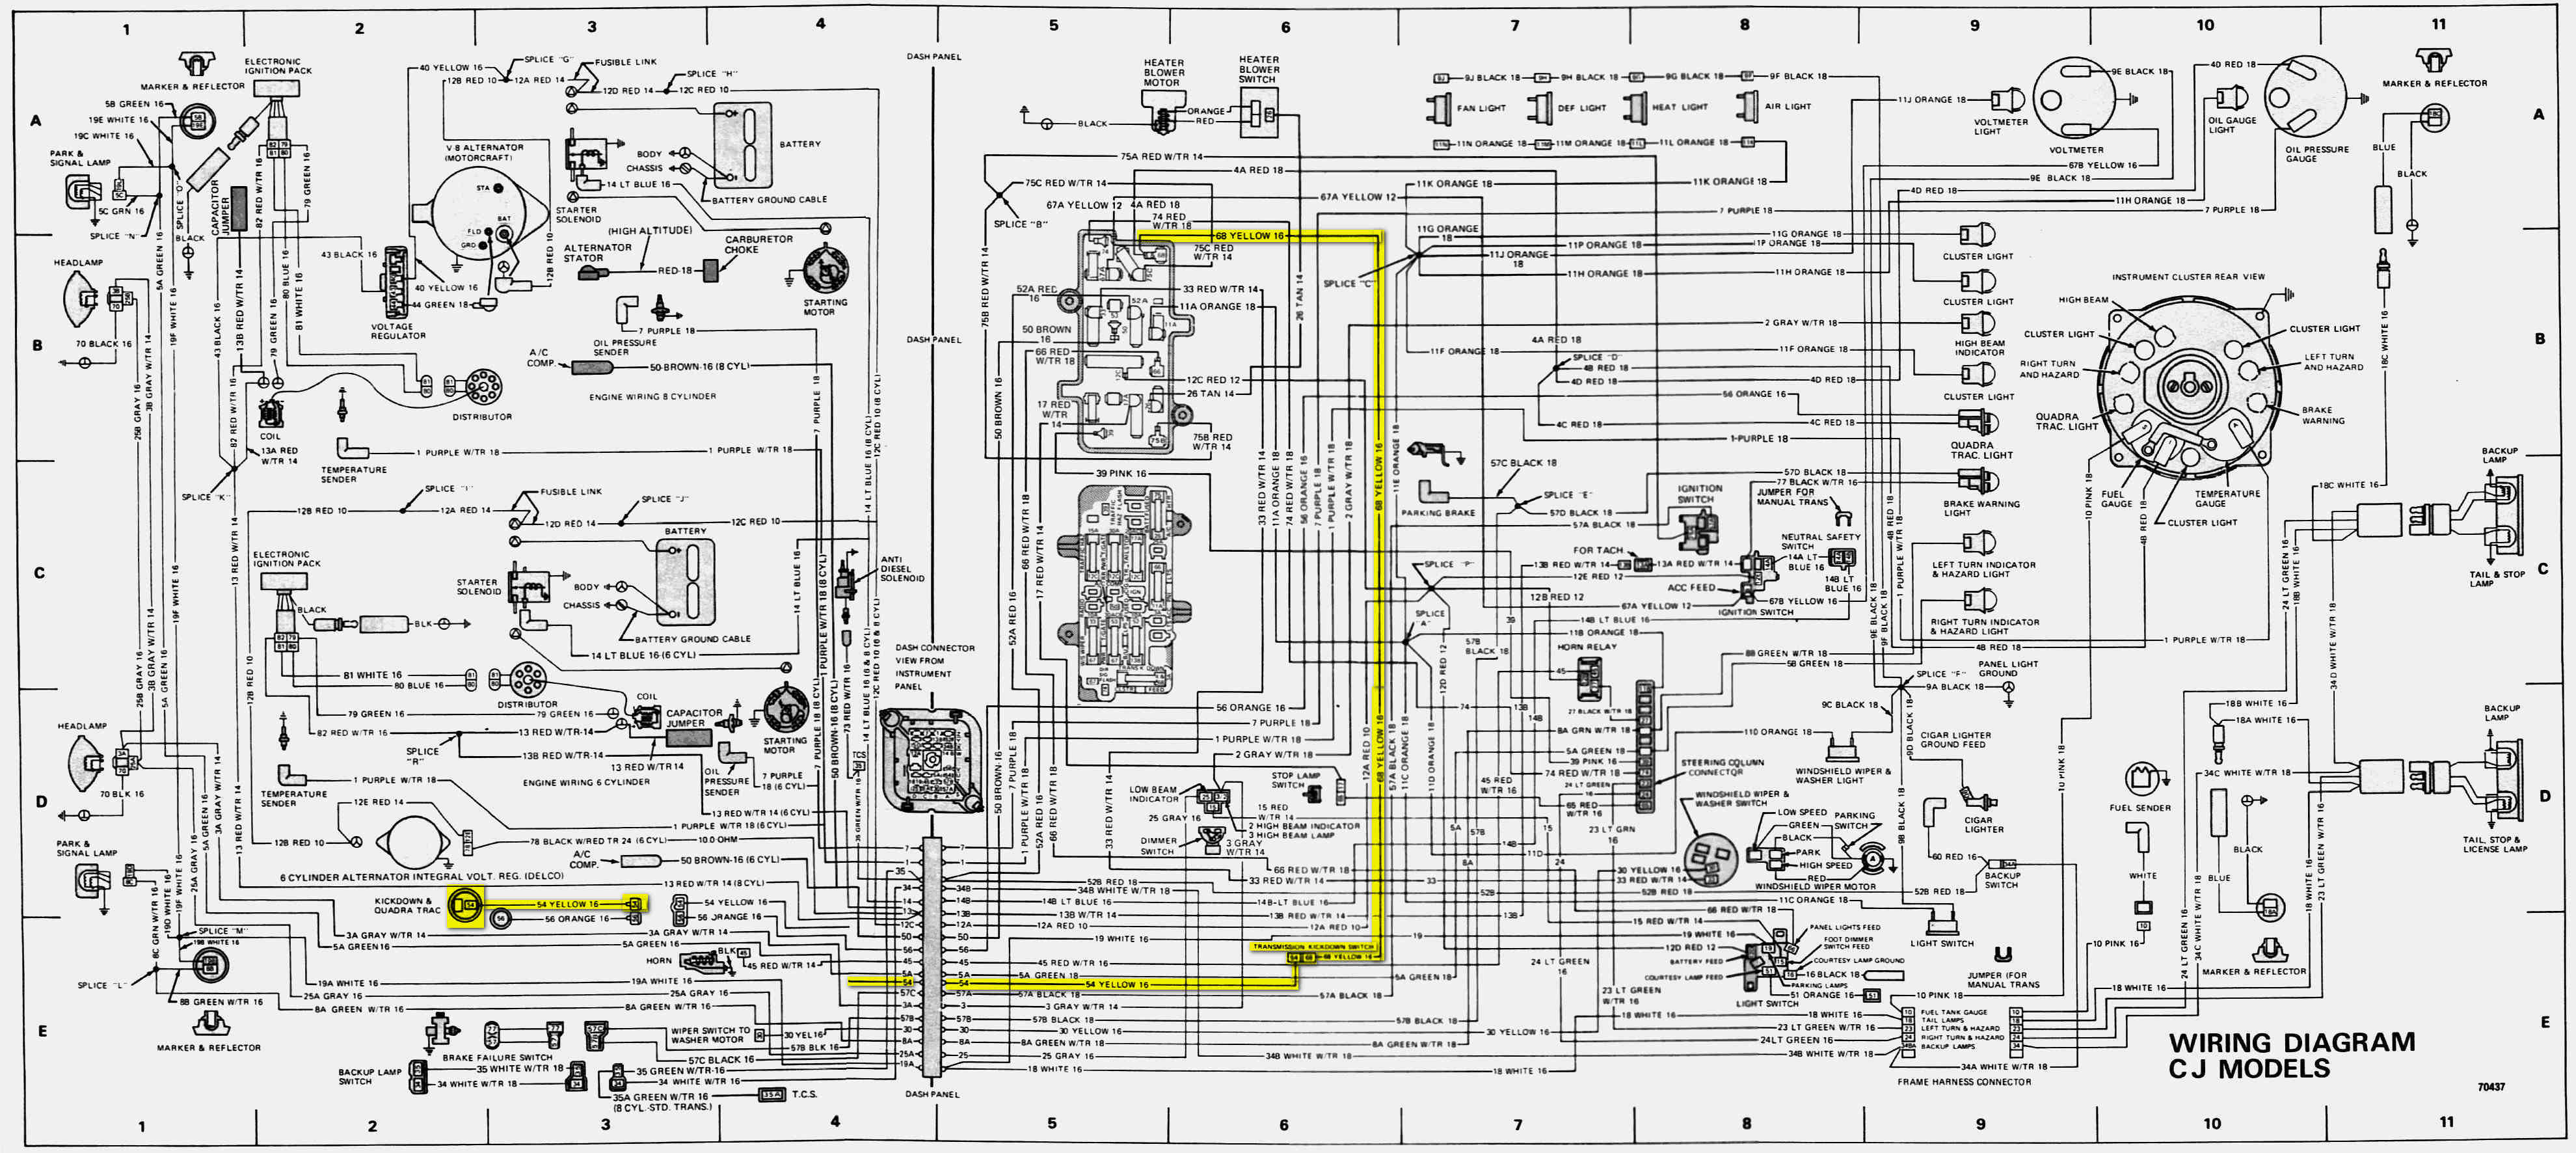 préparation th400 pour cj7 Cj-wiring-diagram1-Kickdown